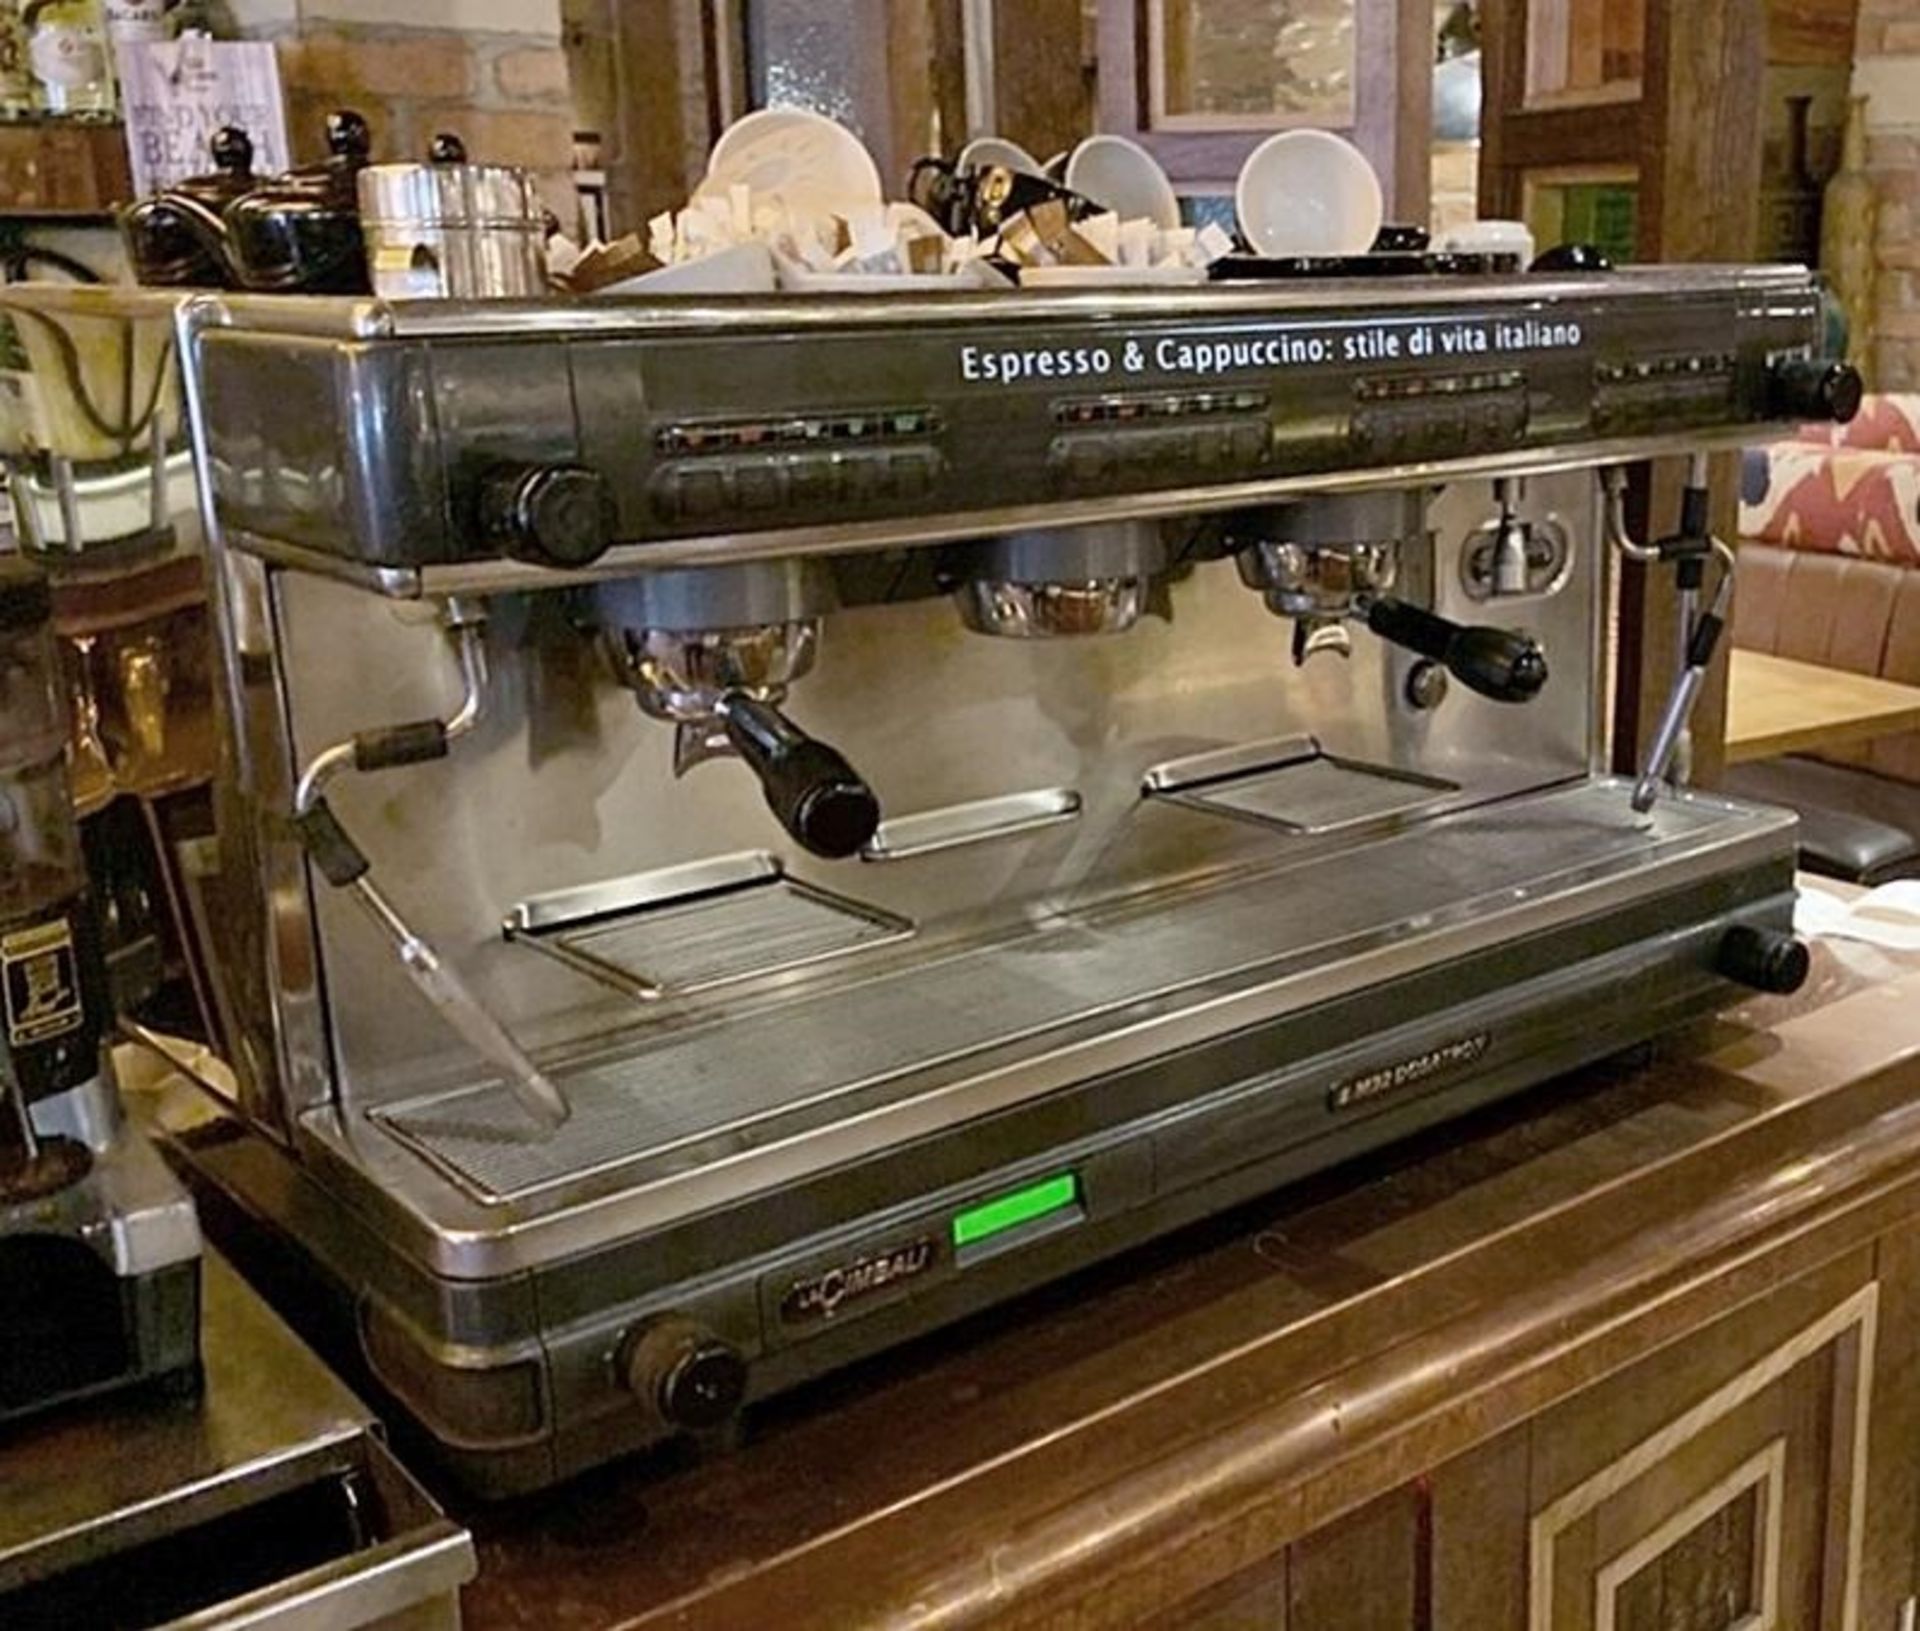 1 x La Cimbalie Espresso & Cappucino 3 Group Coffee Espresso Machine - Model M2 Dosatron - - Image 2 of 4